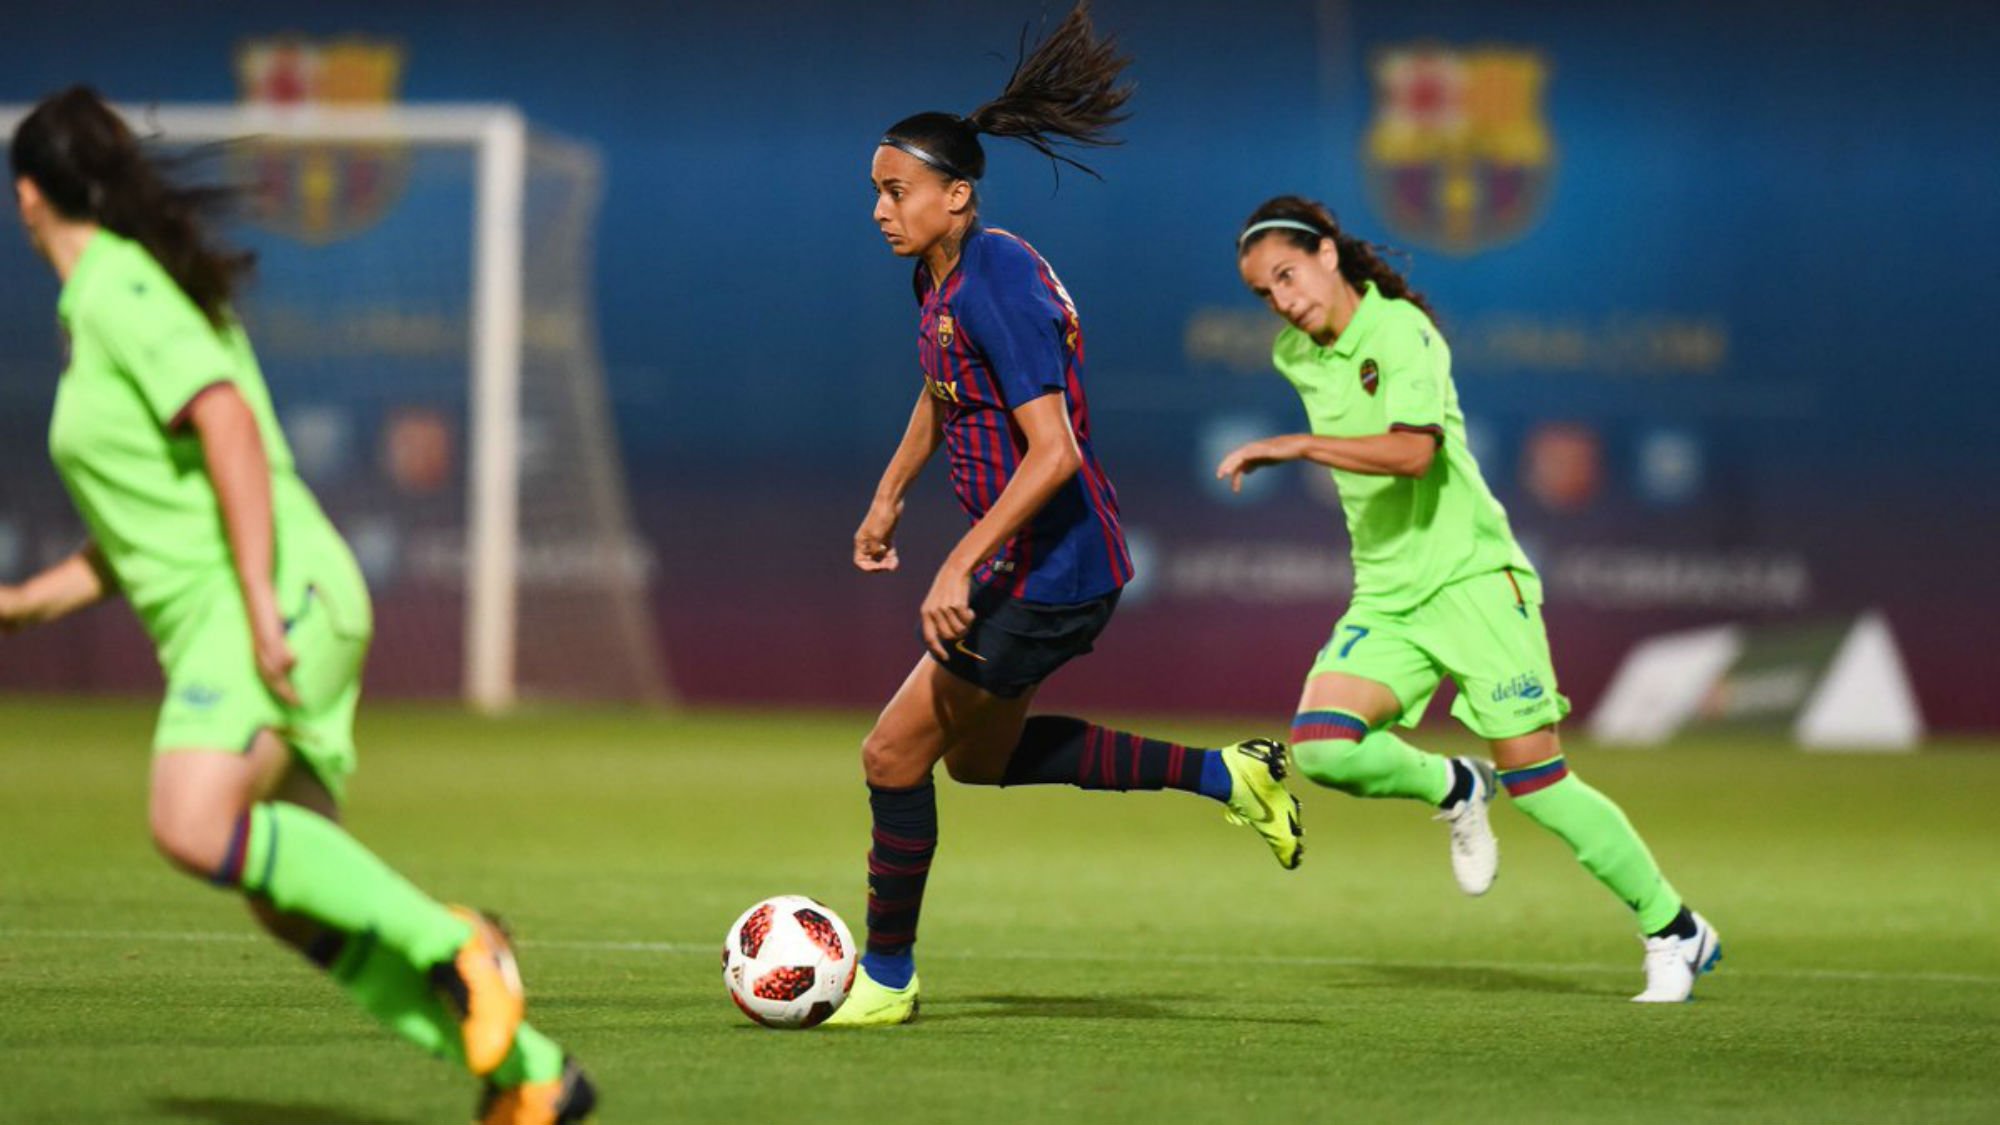 L'entrenador del Barça femení denuncia insults racistes contra una jugadora